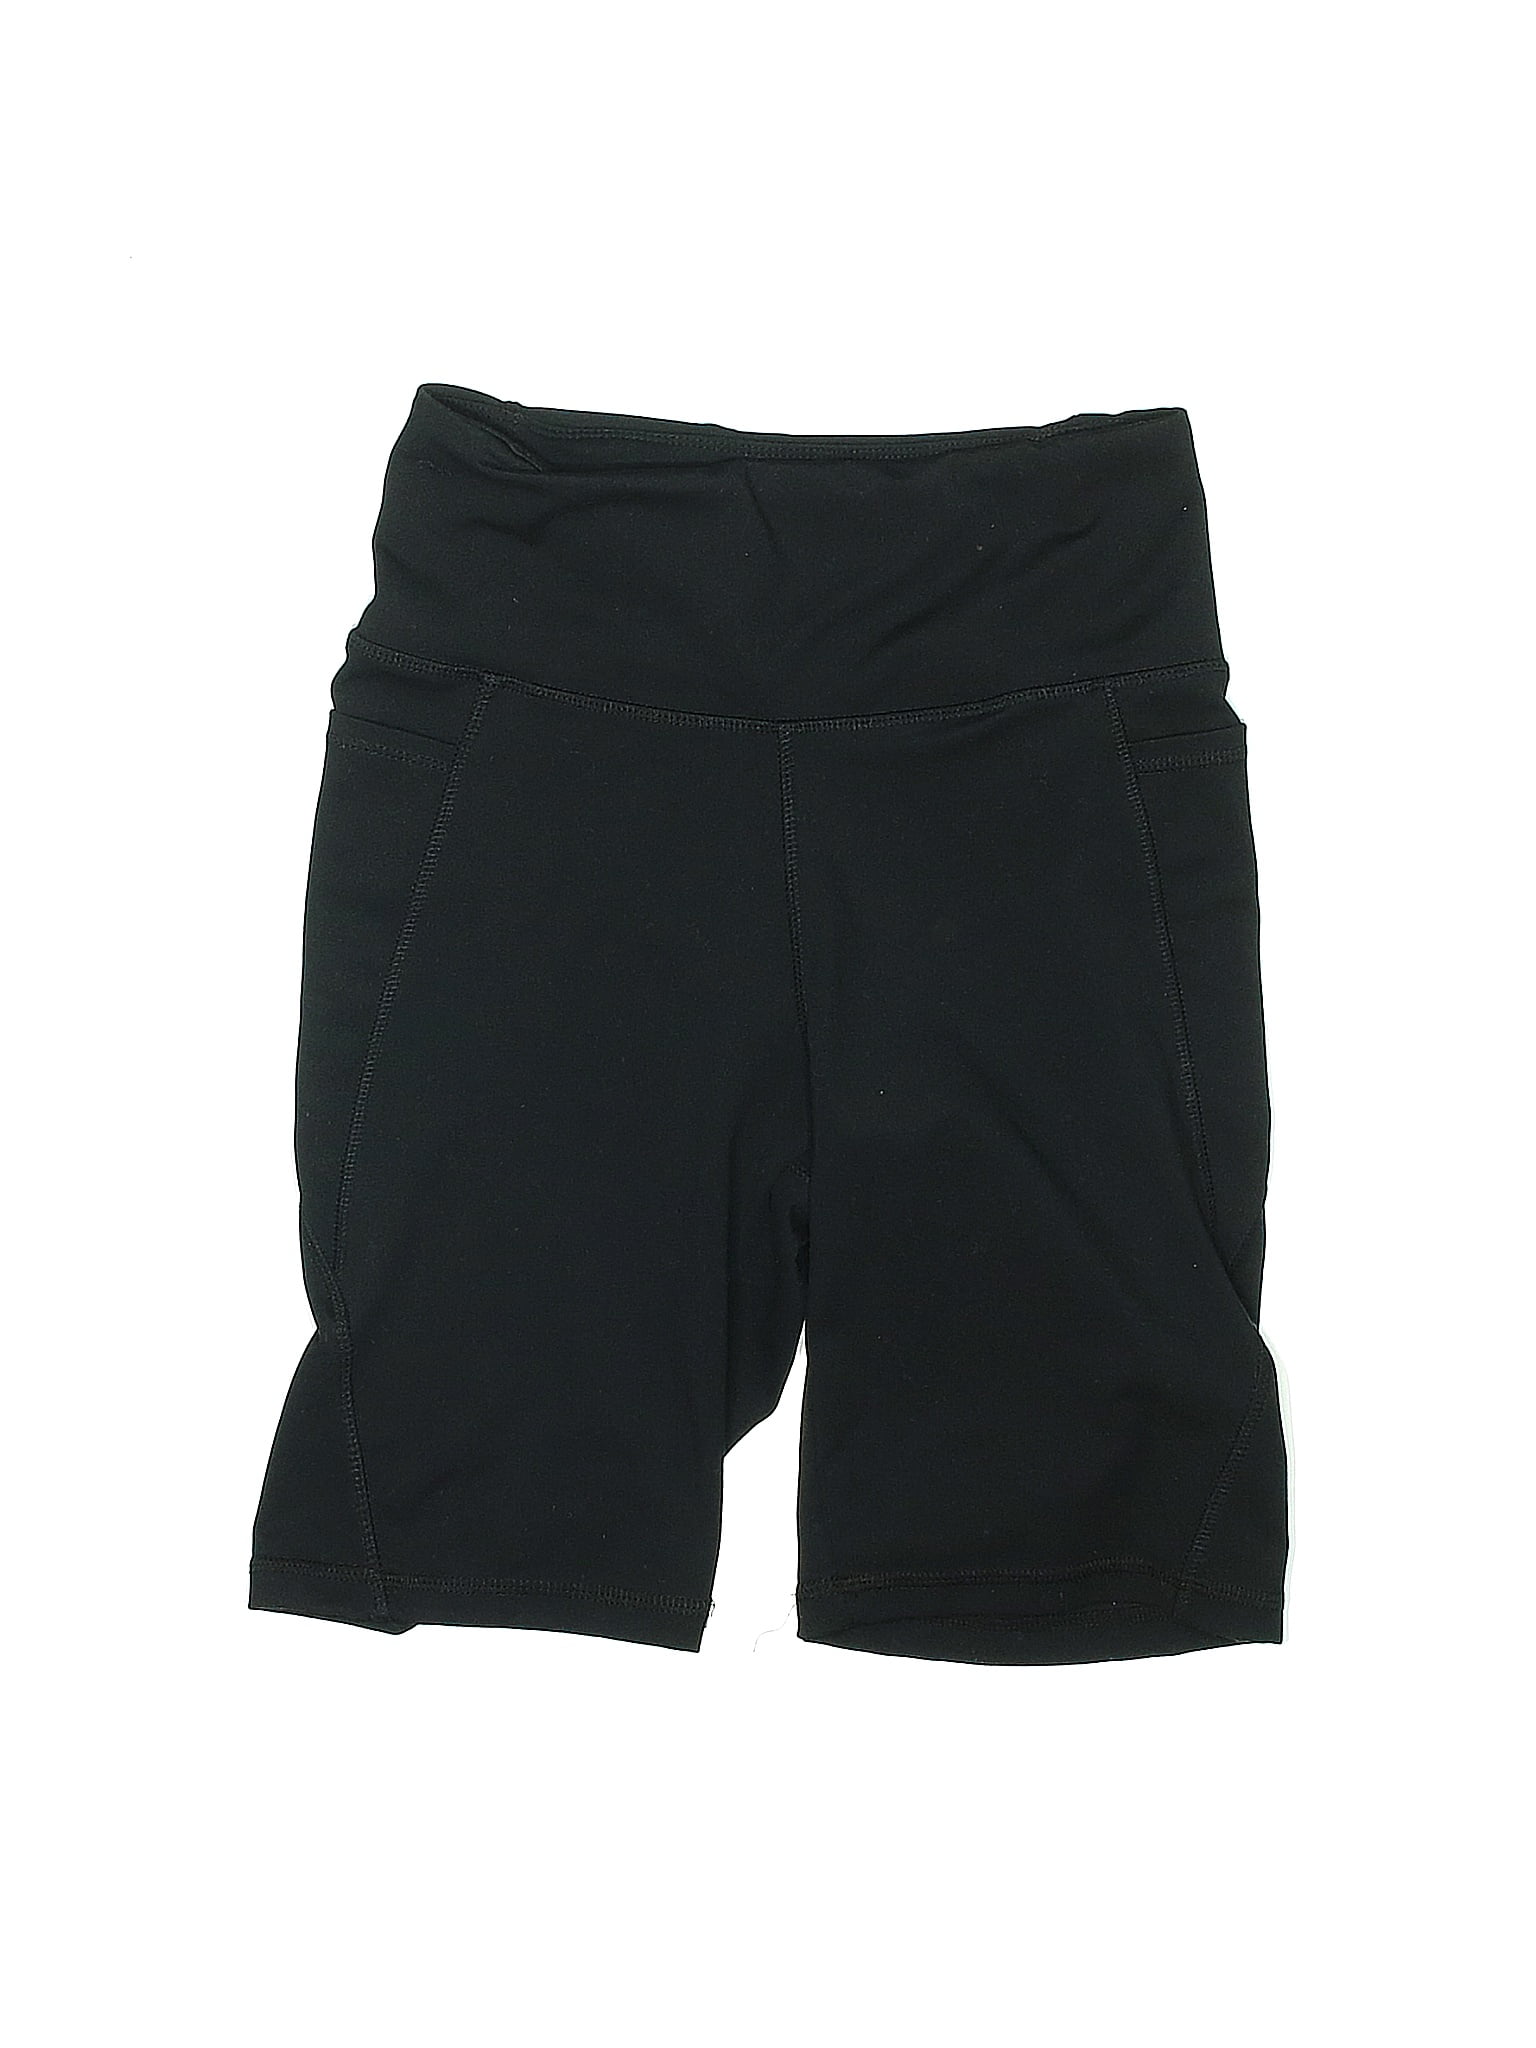 Danskin Workout Shorts Size M #danskin - Depop